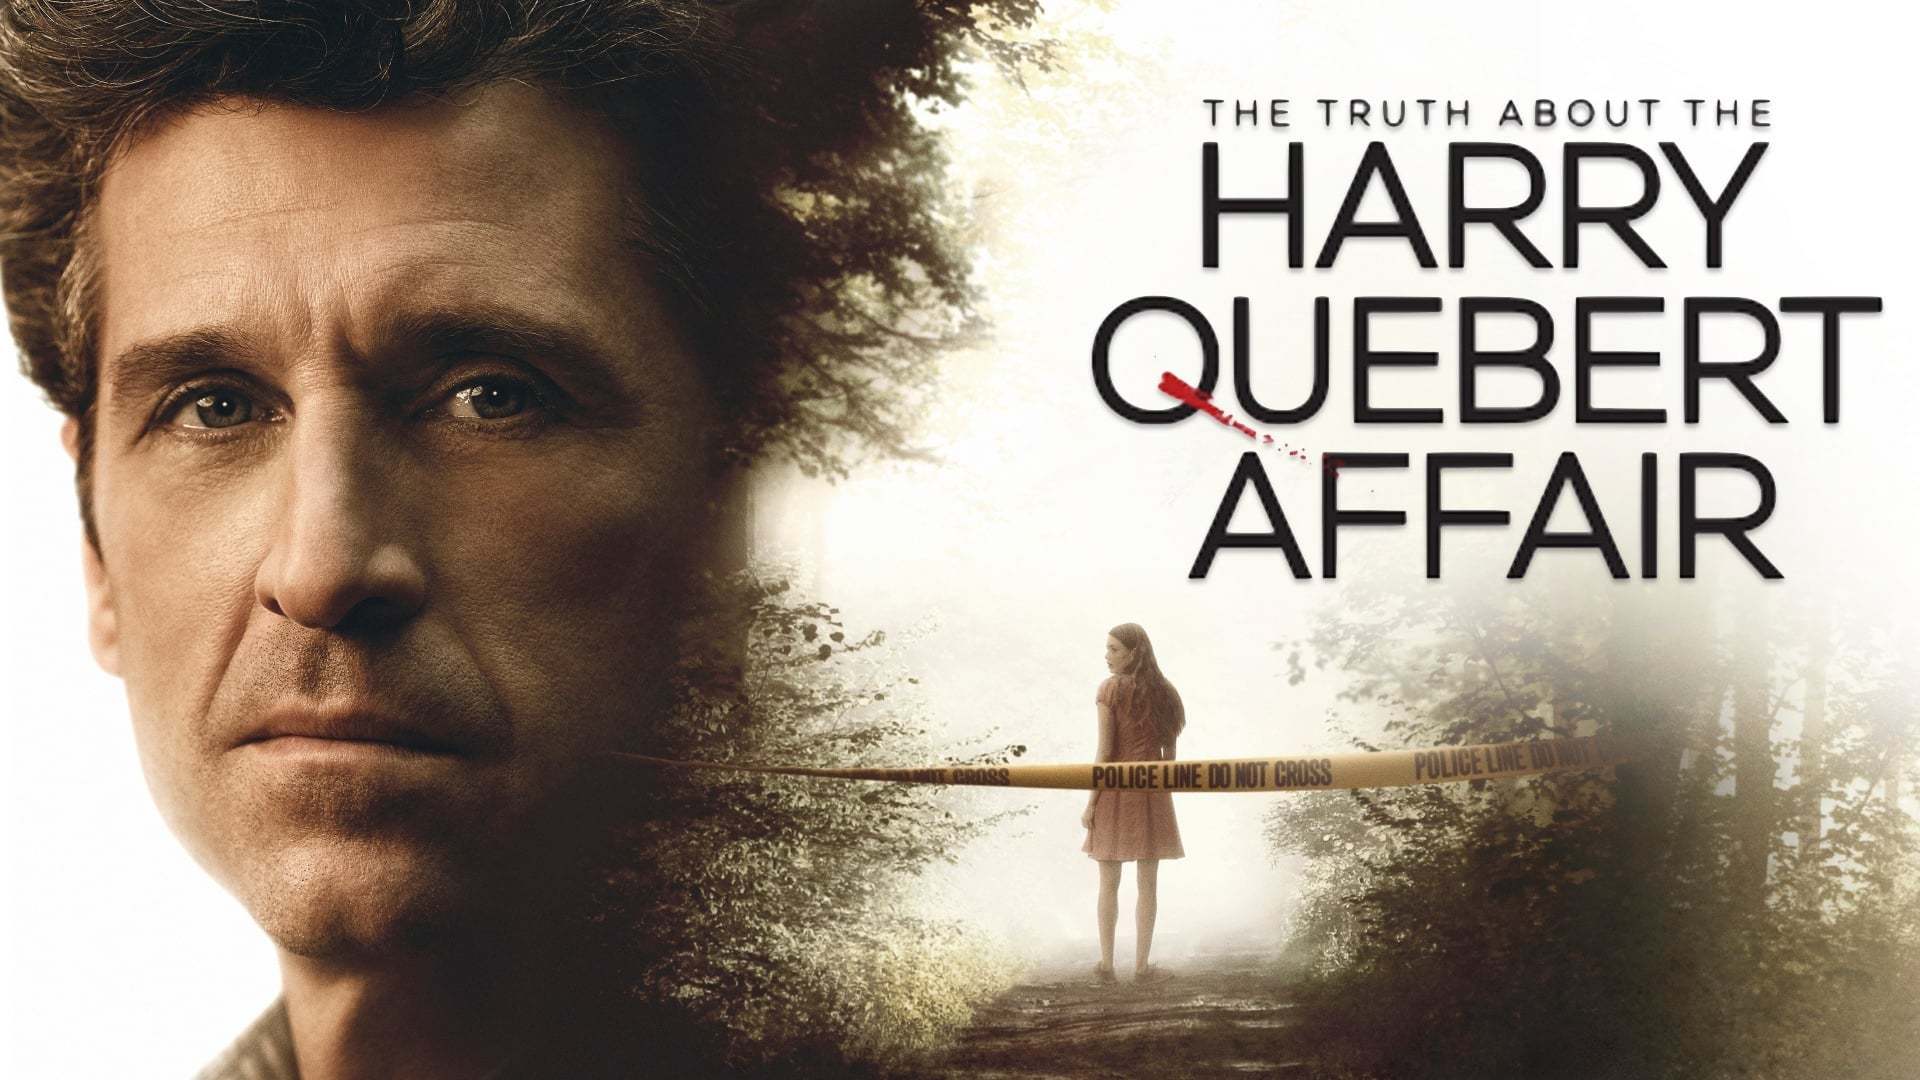 სიმართლე ჰარი ქუბერთის საქმის შესახებ / The Truth About the Harry Quebert Affair